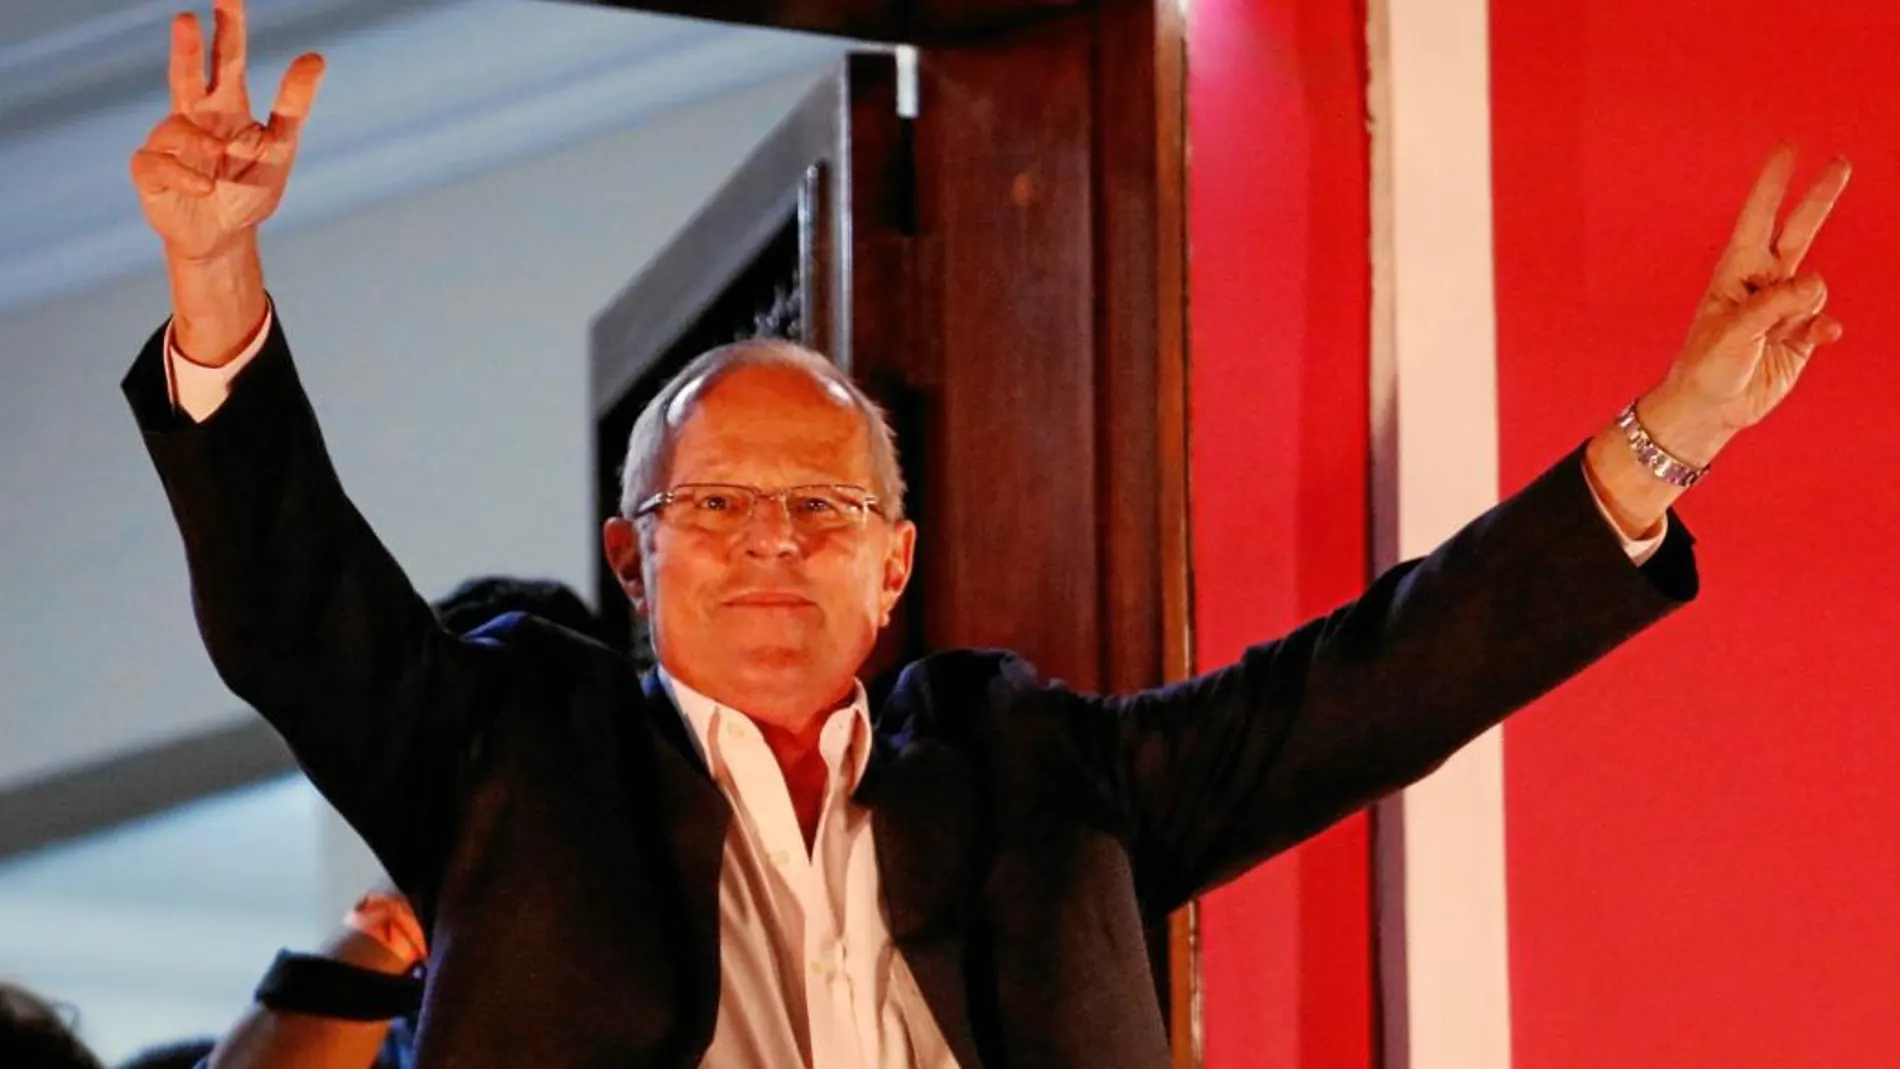 El tecnócrata Pedro Pablo Kuczyinski celebra su virtual victoria en las presidenciales celebradas el domingo en Perú